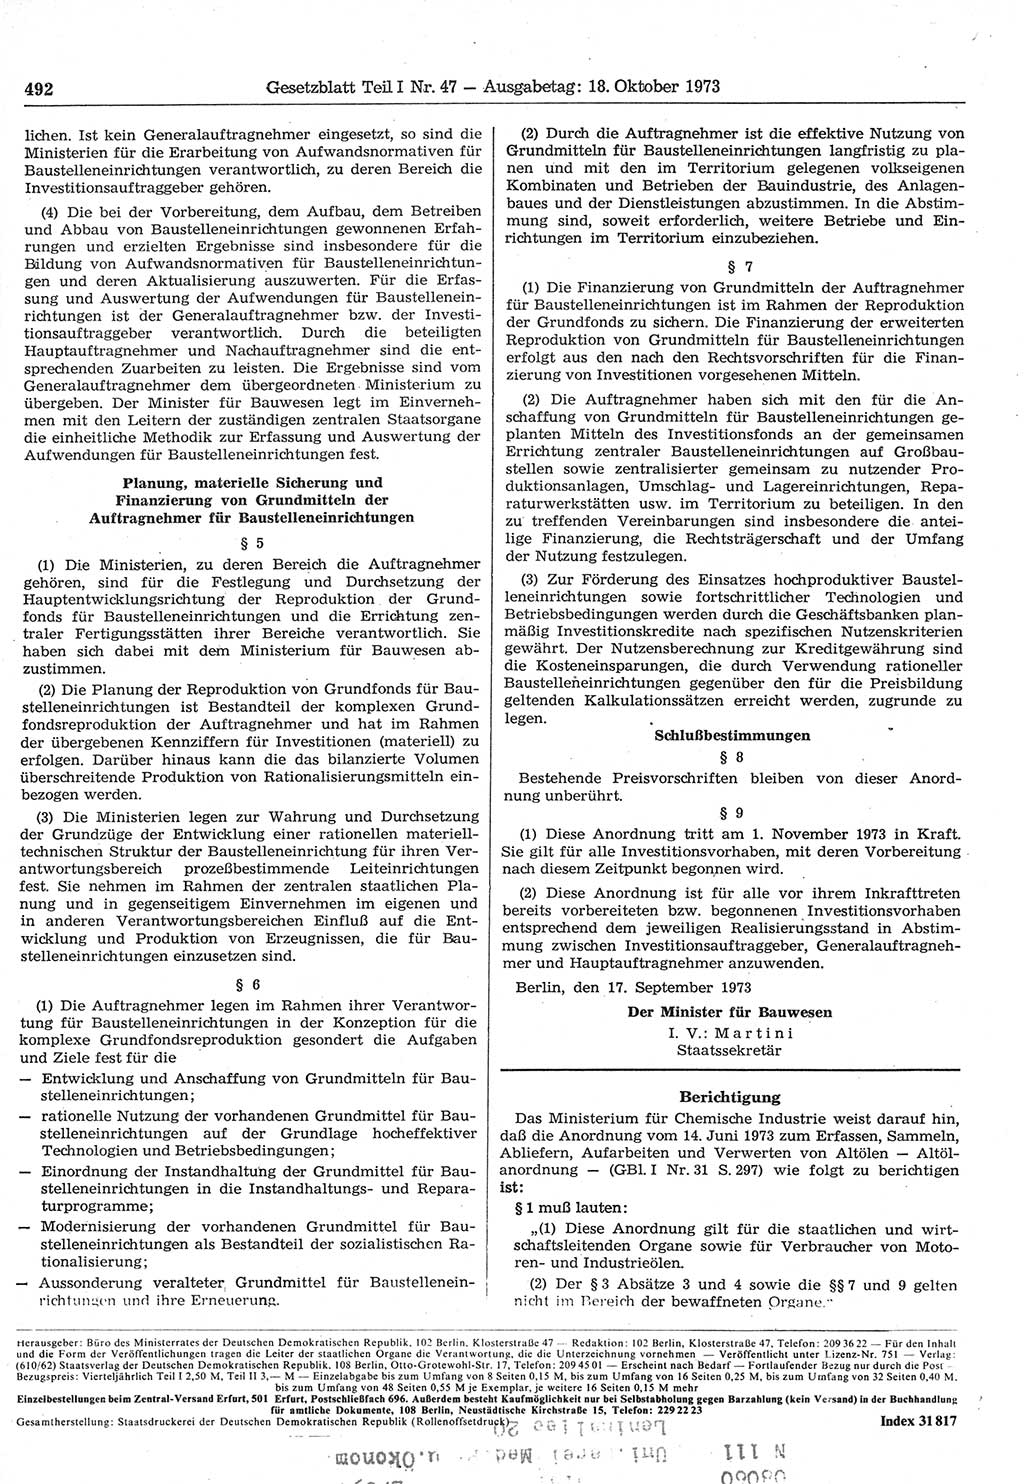 Gesetzblatt (GBl.) der Deutschen Demokratischen Republik (DDR) Teil Ⅰ 1973, Seite 492 (GBl. DDR Ⅰ 1973, S. 492)